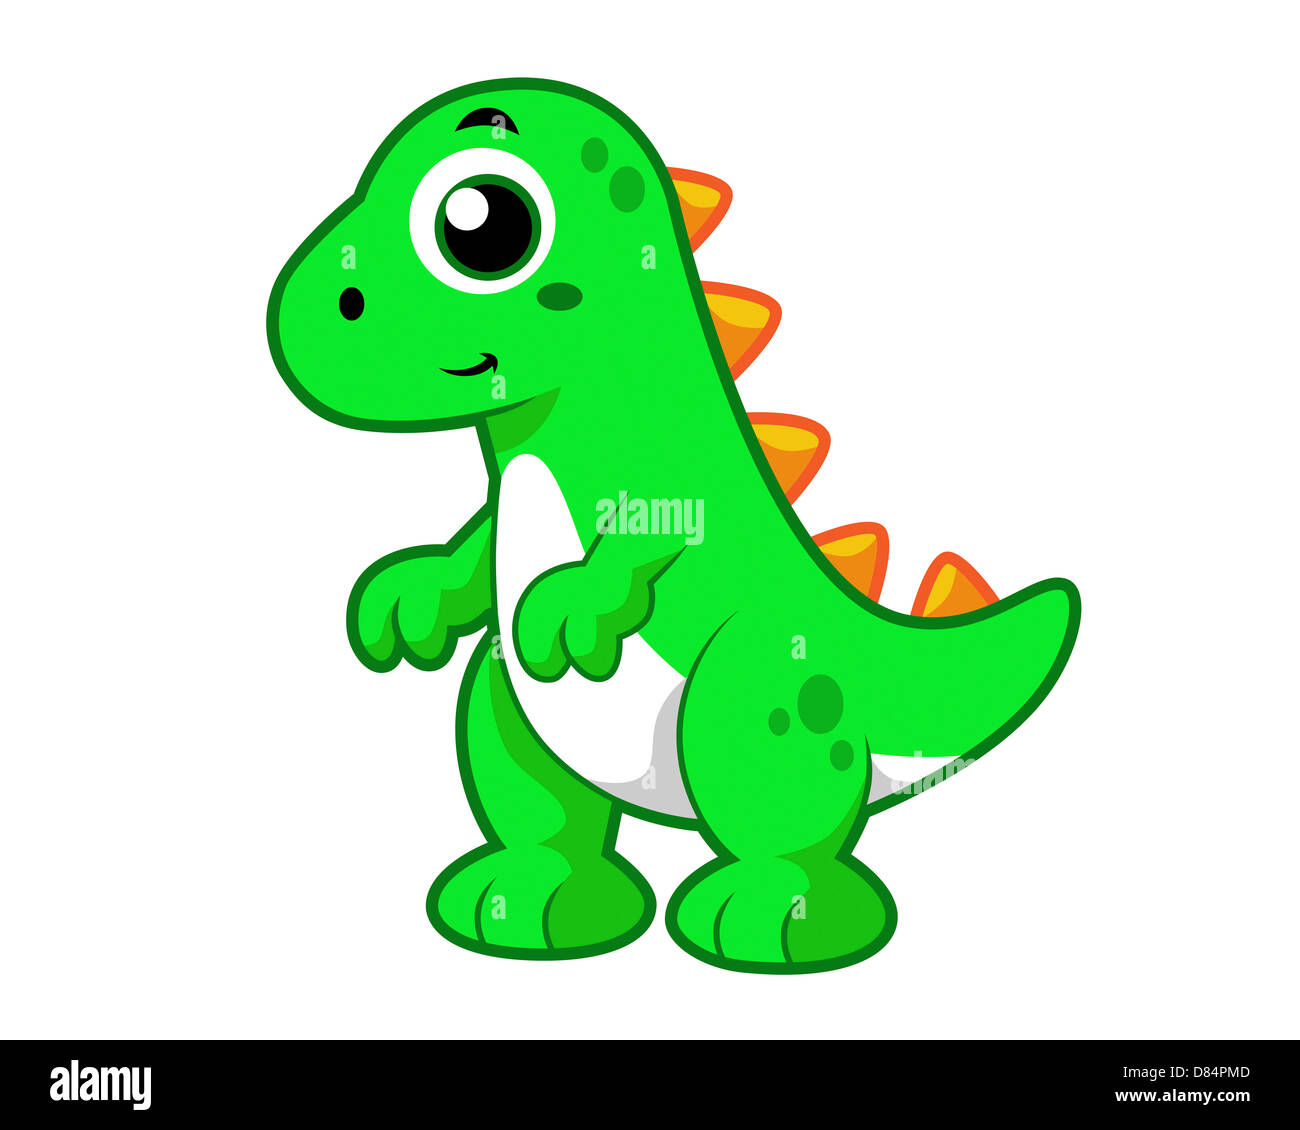 Cute illustration of Tyrannosaurus Rex. Stock Photo